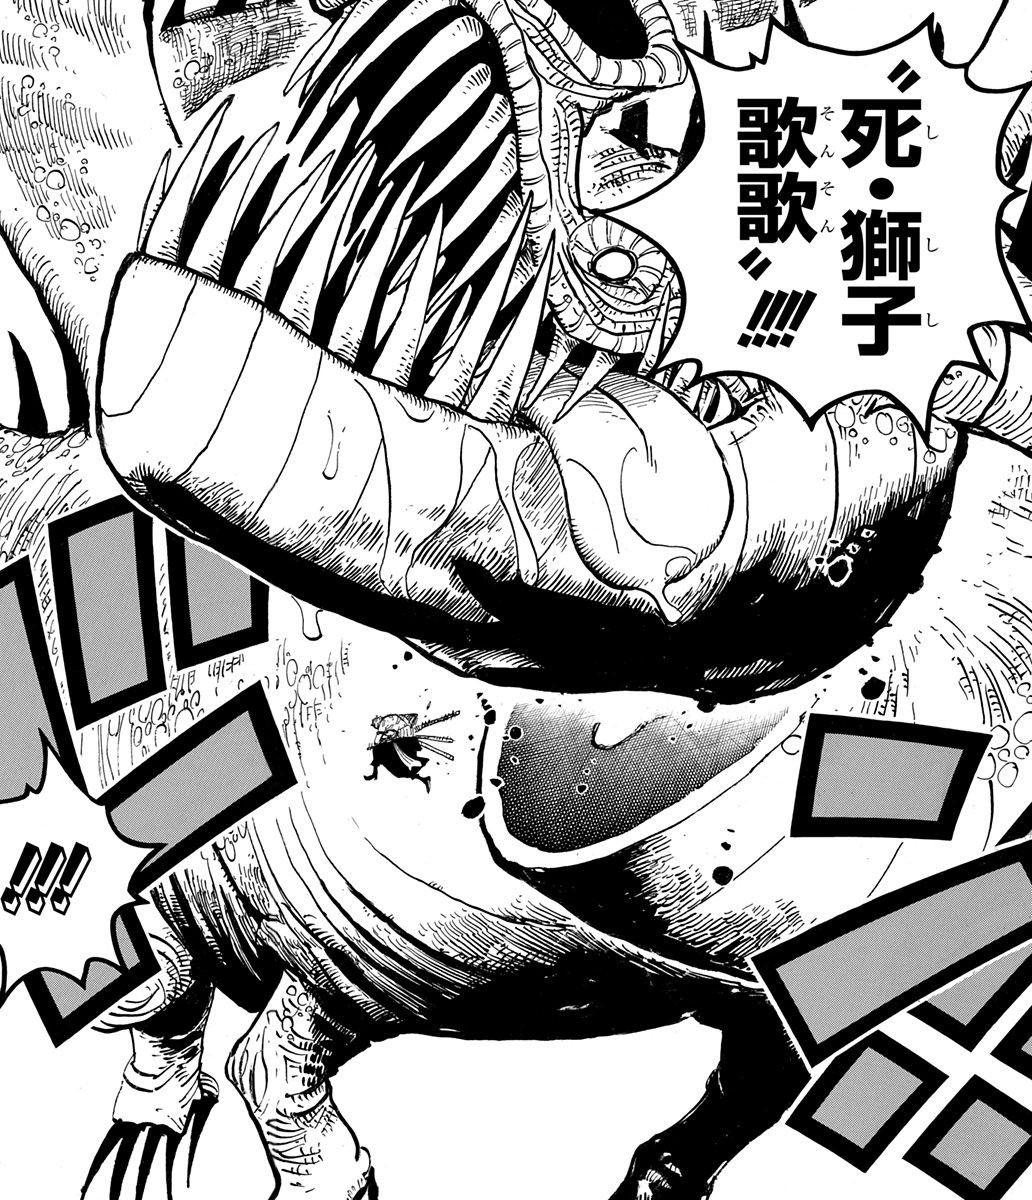 Get to Know 'One Piece' Live Action's Mackenyu As Zoro • Instinct Magazine